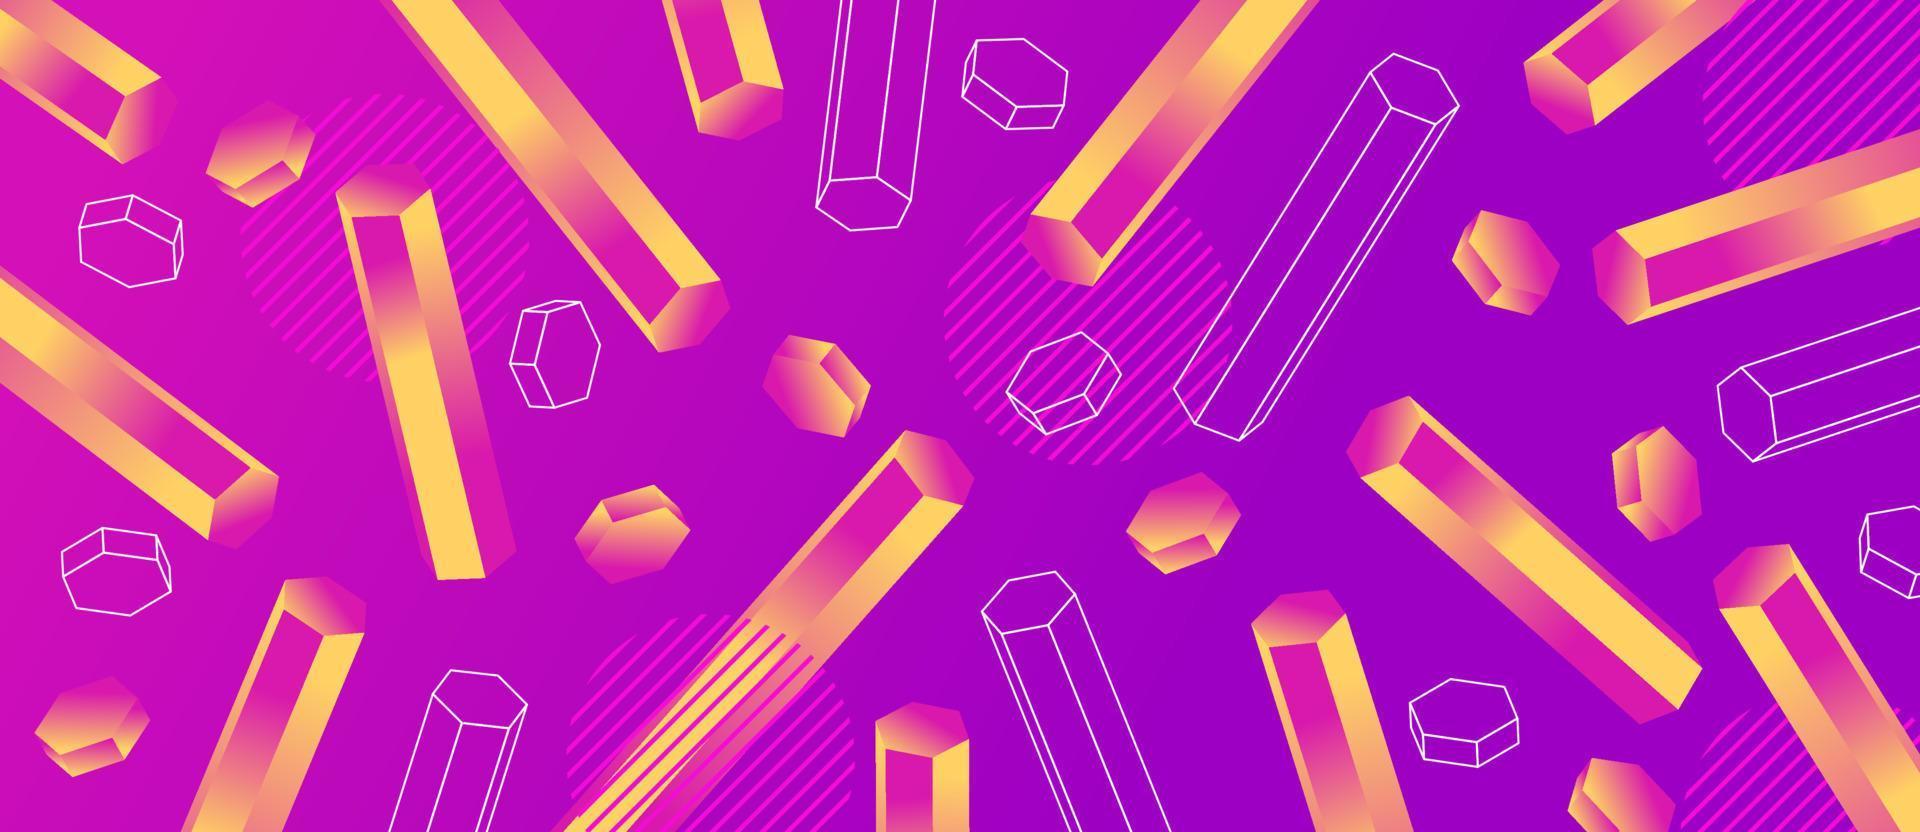 tubo esagonale colorato sfumato animato neon, rosa, giallo. Fondo astratto futuristico di forma geometrica 3d. vettore